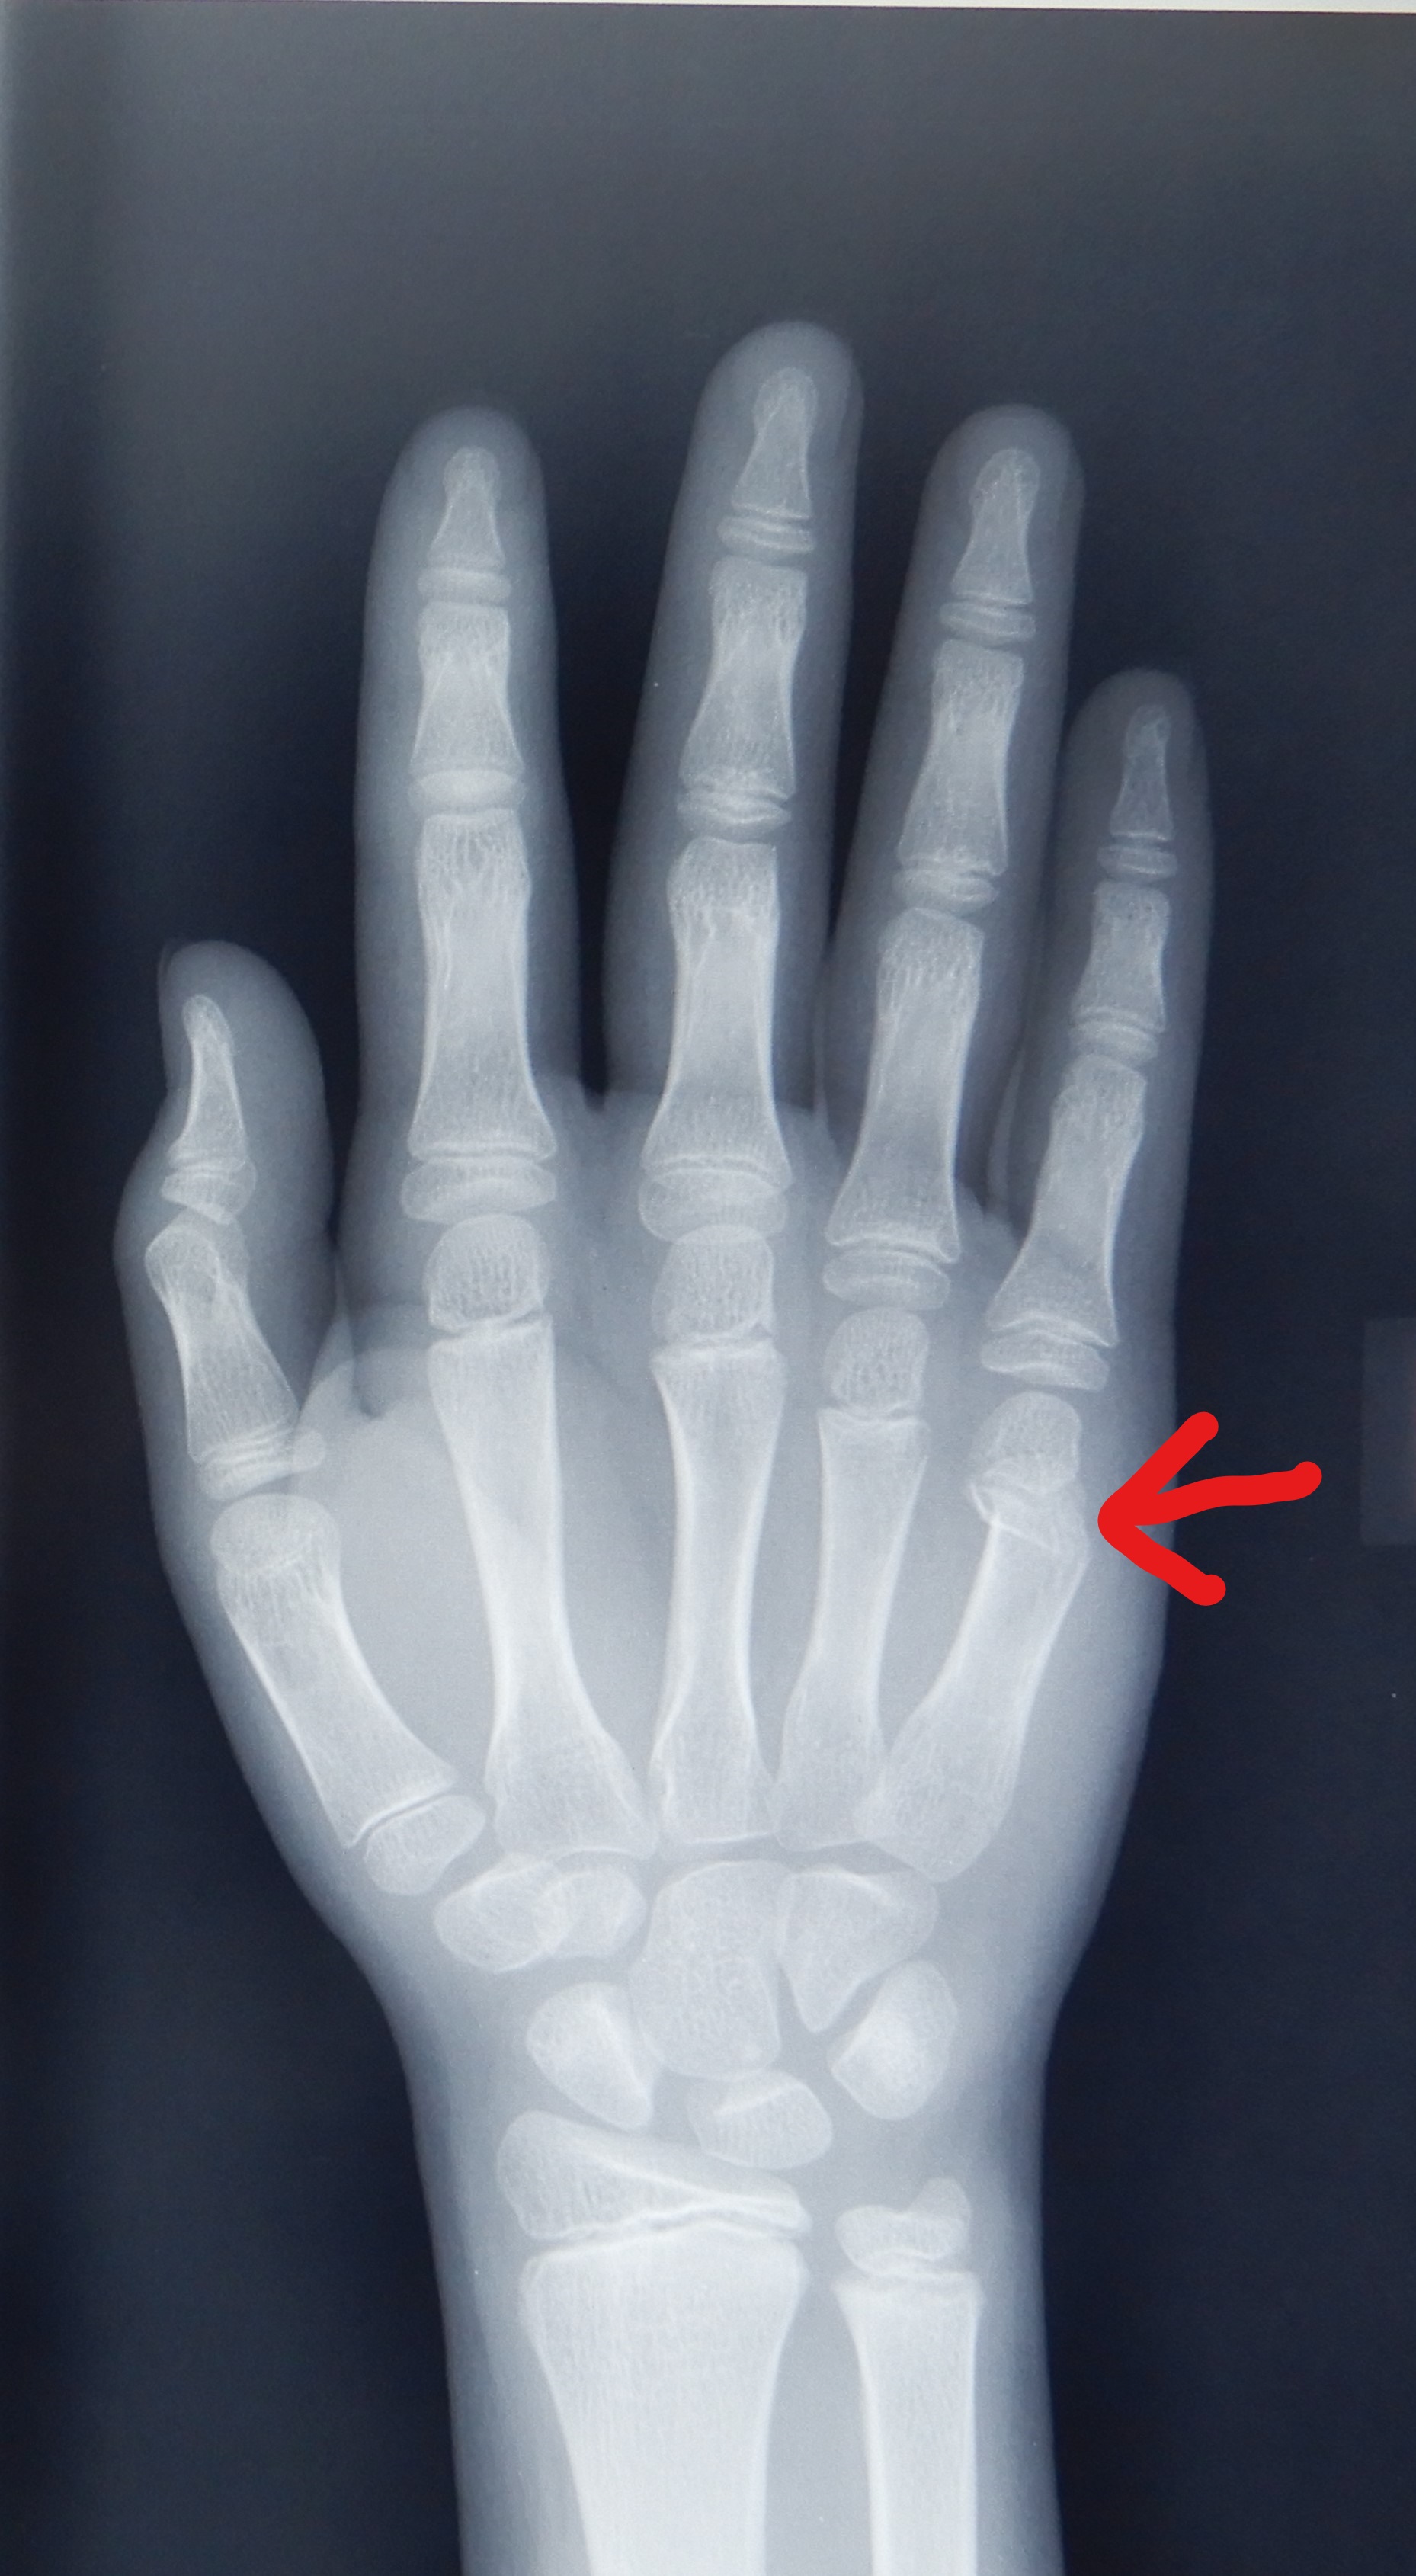 右手第四掌骨斜行性骨折，拍X片图（图片在百度相册）。寻求好的治疗方案。明天用，较急 急_百度知道